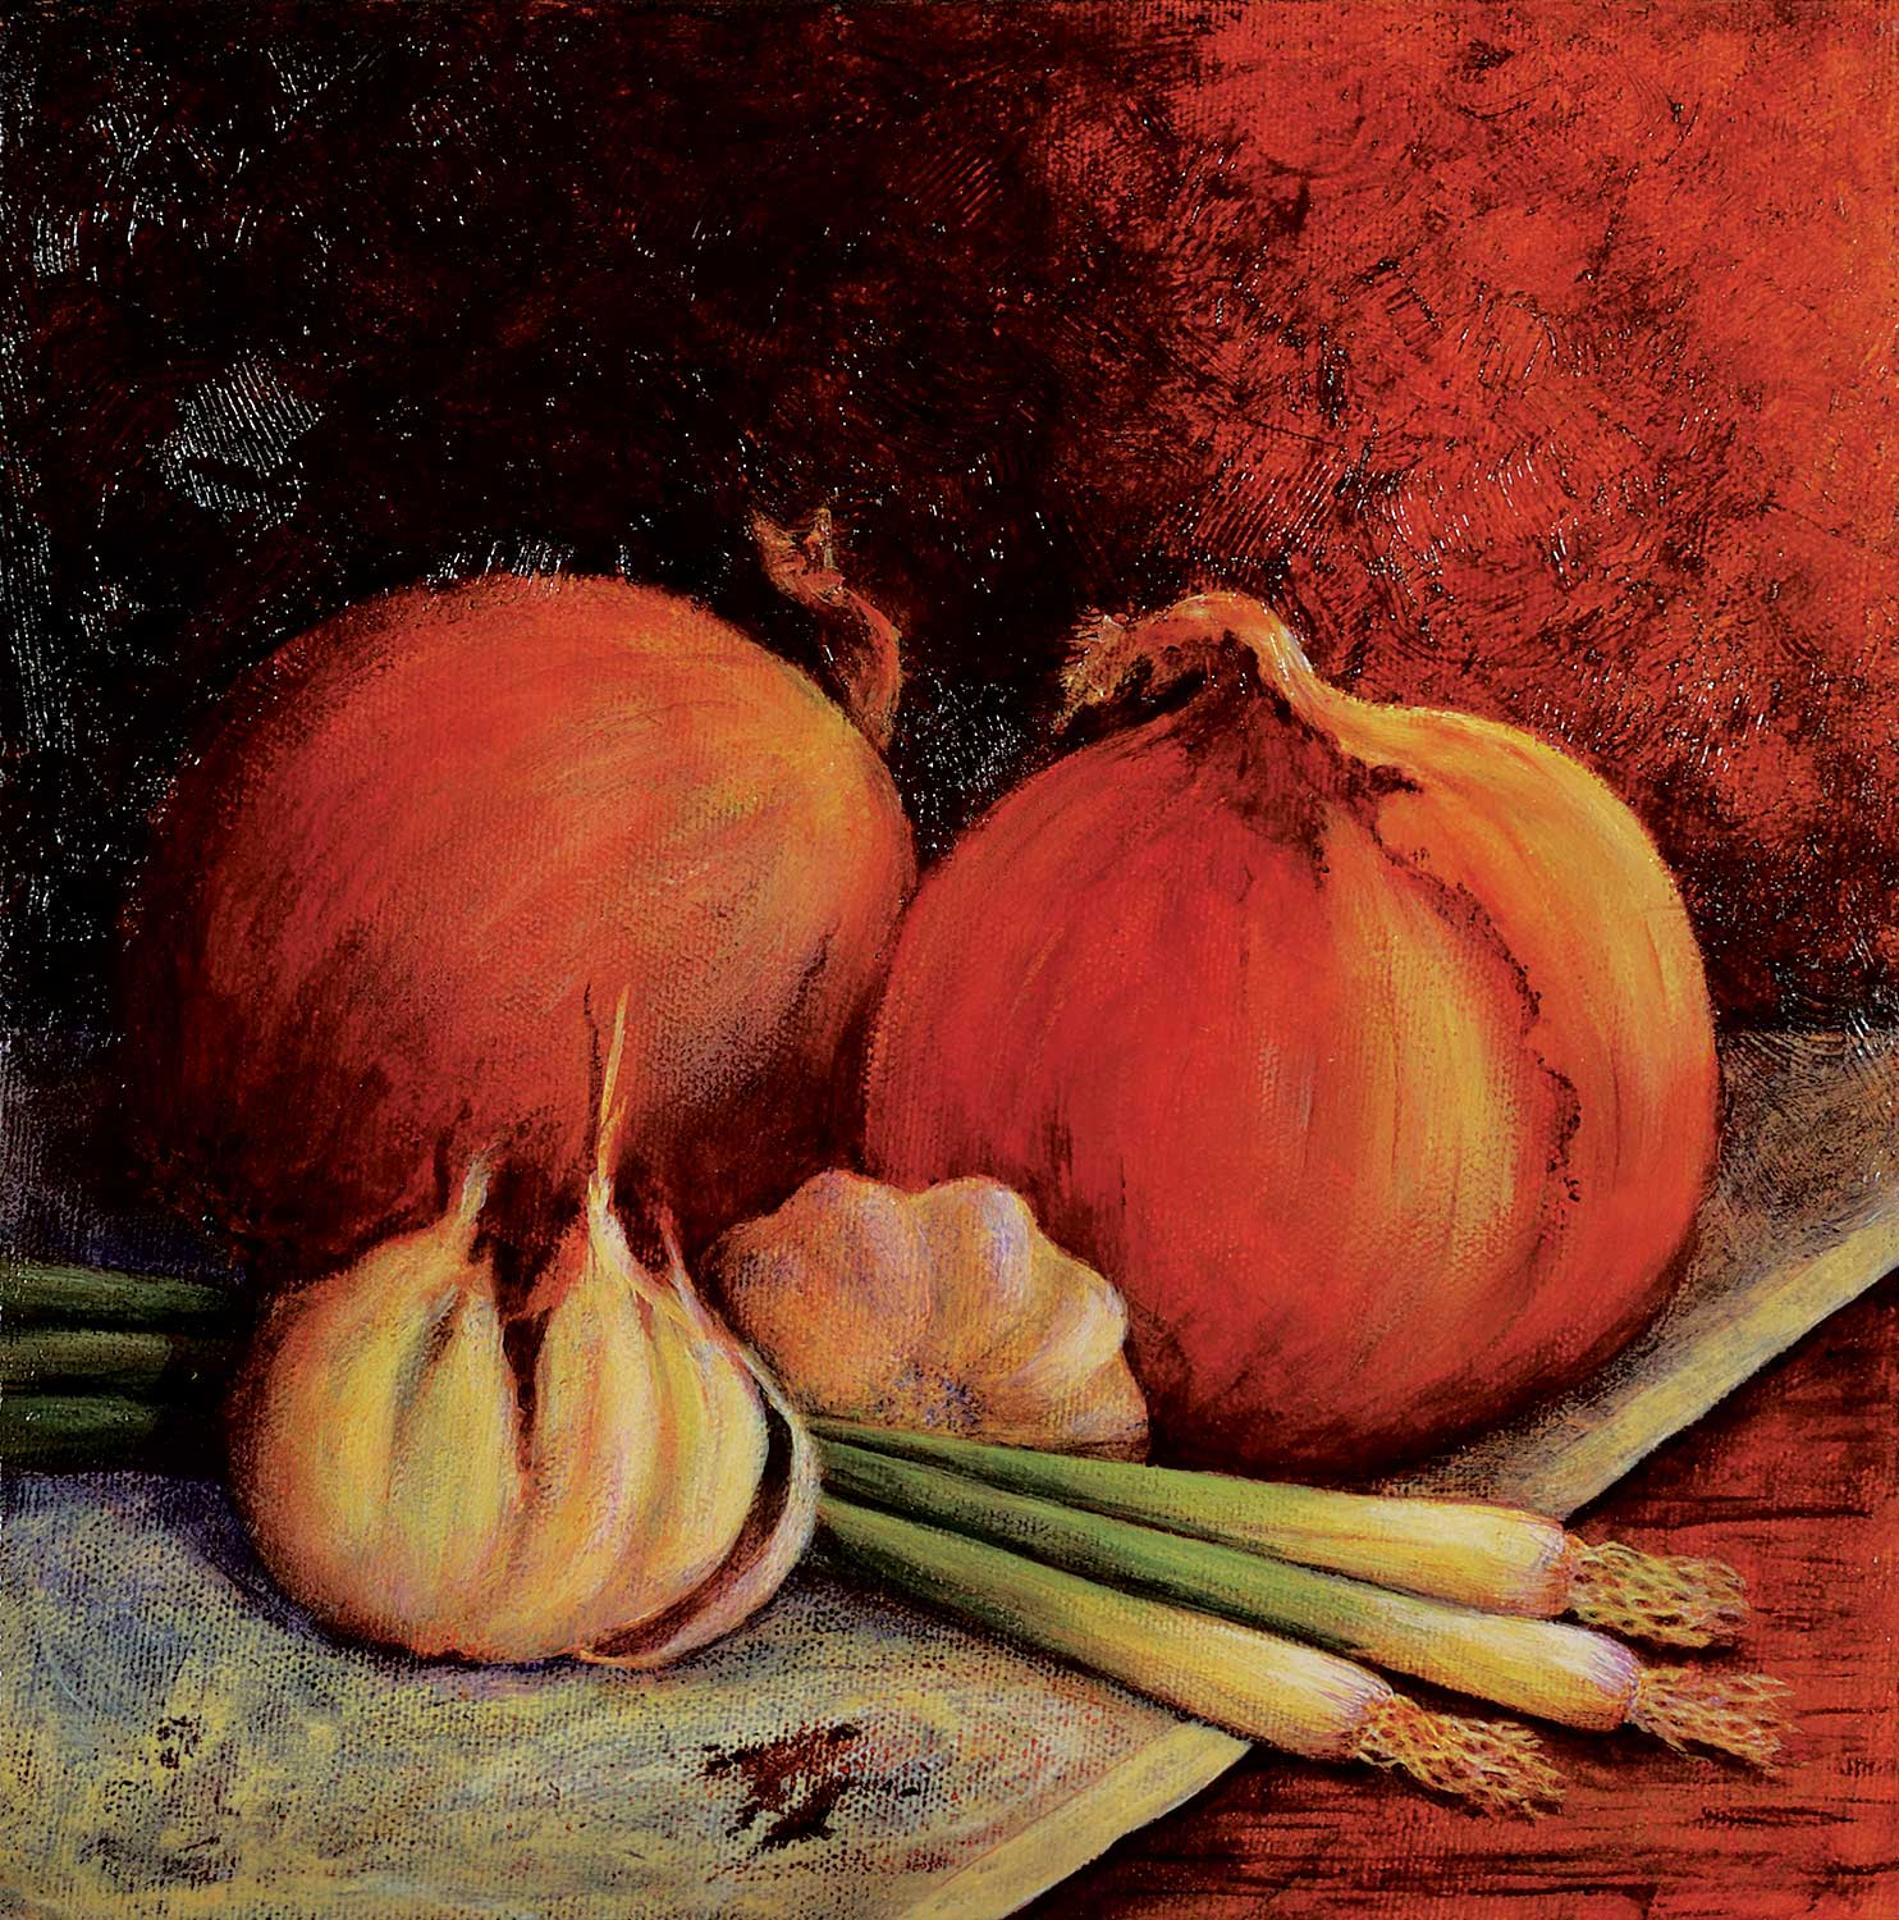 Onions and Garlic by artist Bonnie Curran